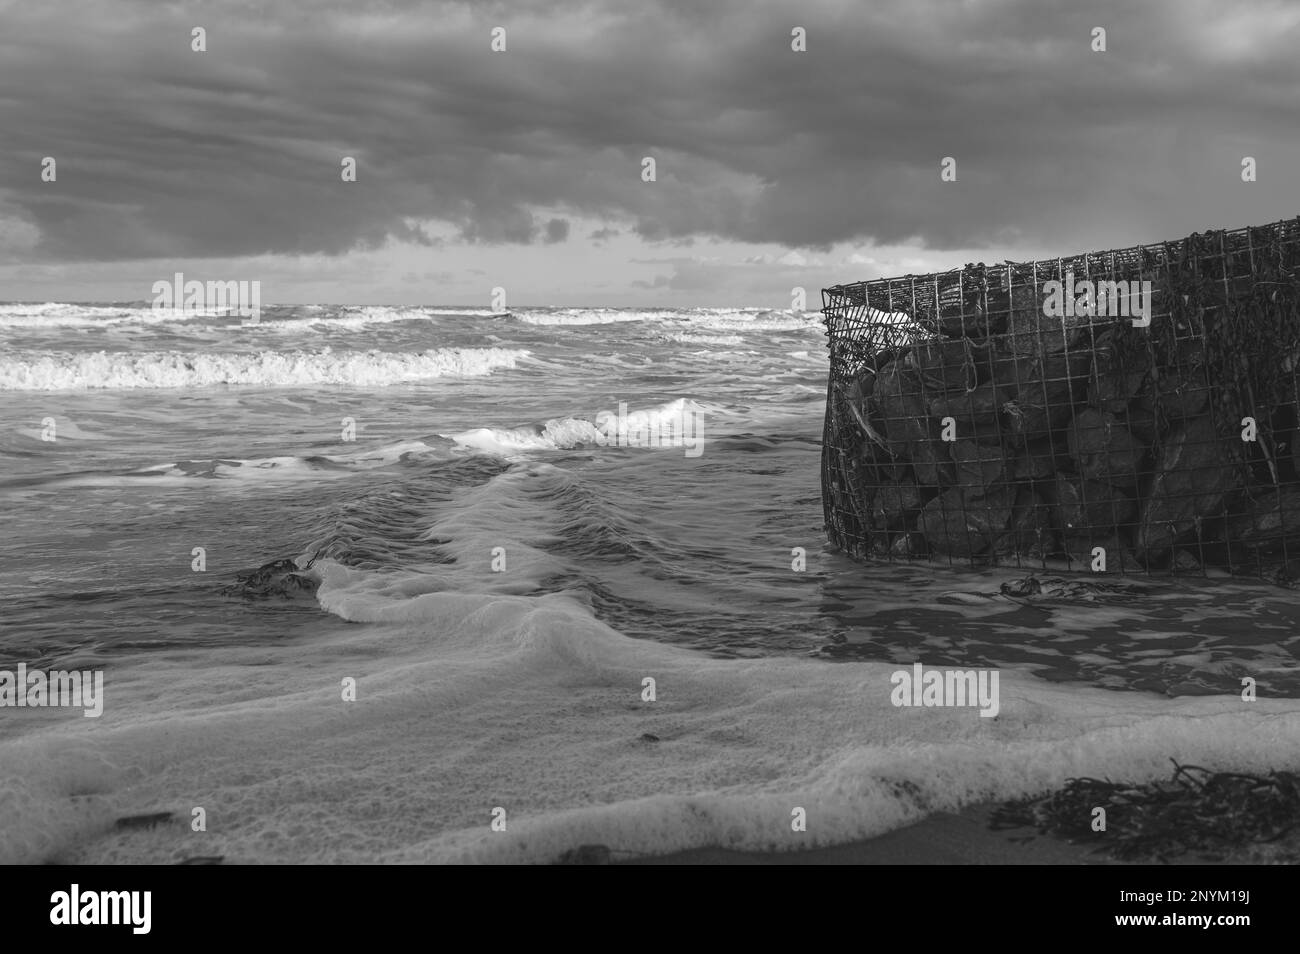 Panier de gabion avec des pierres sur une plage à Walton sur la Naze dans l'Essex. Froid, hiver, jour venteux. Les vagues s'écrasant contre le panier de gabion. Banque D'Images